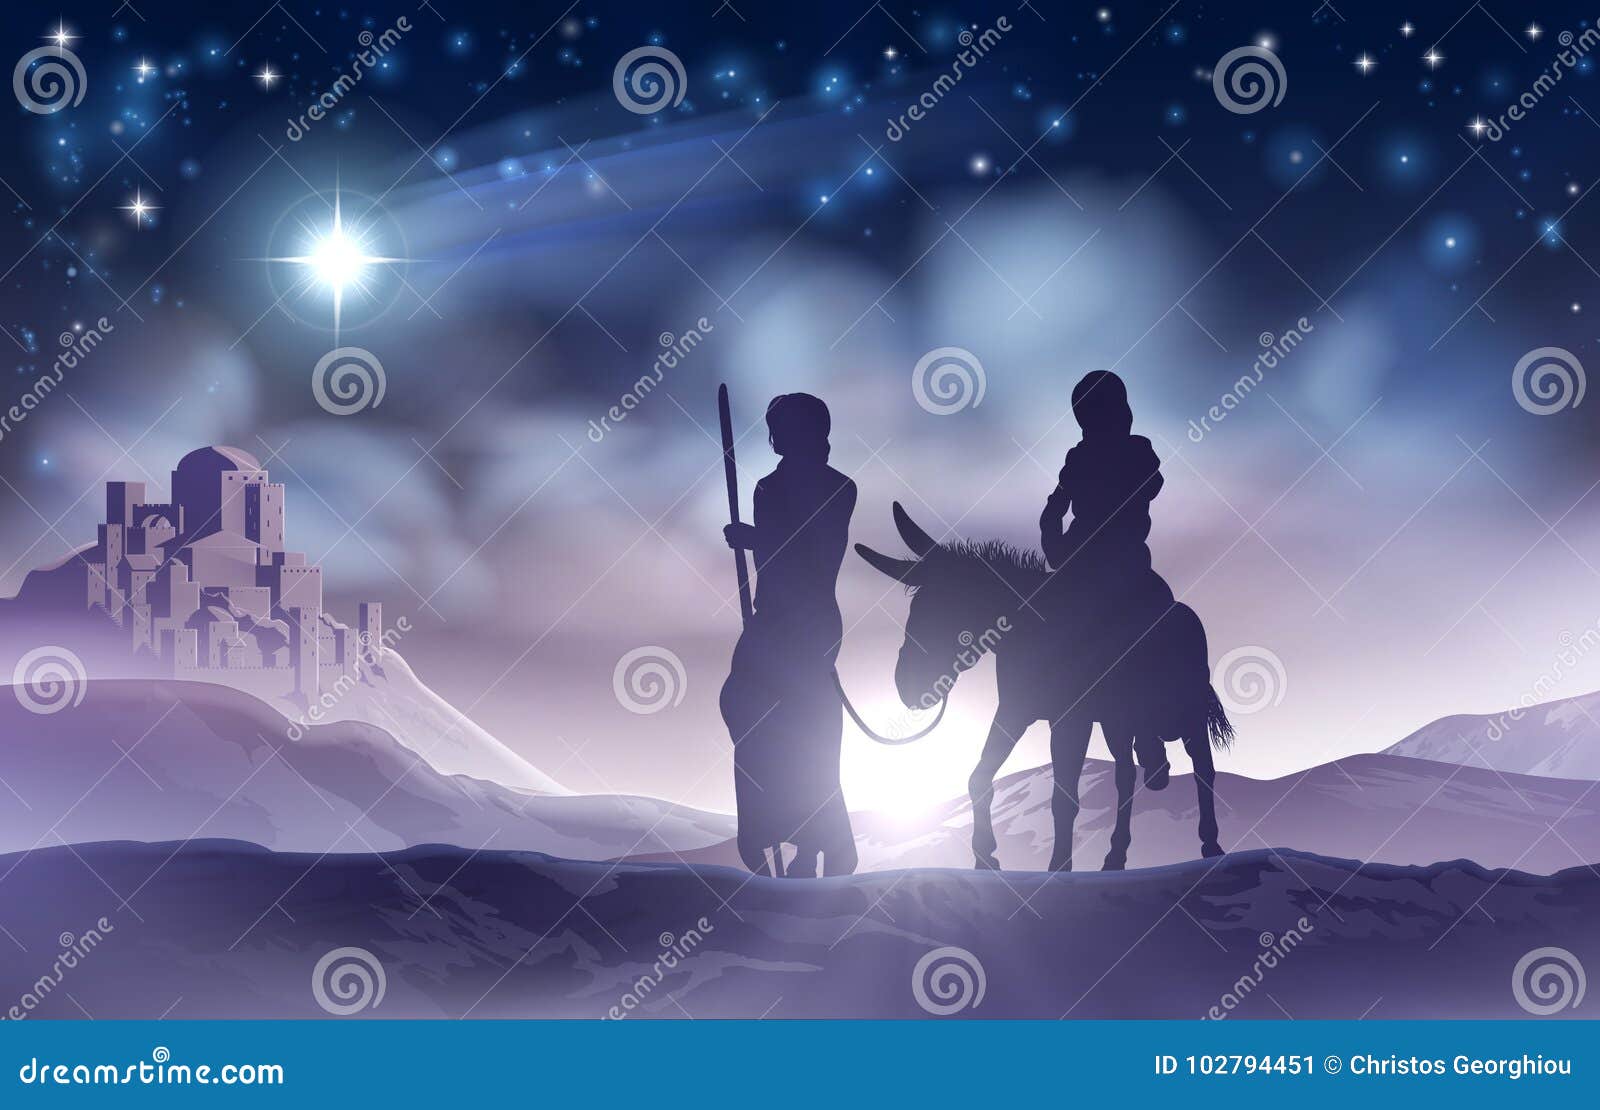 Natale Nativita.Illustrazione Maria E Joseph Di Natale Di Nativita Illustrazione Vettoriale Illustrazione Di Background Nascita 102794451